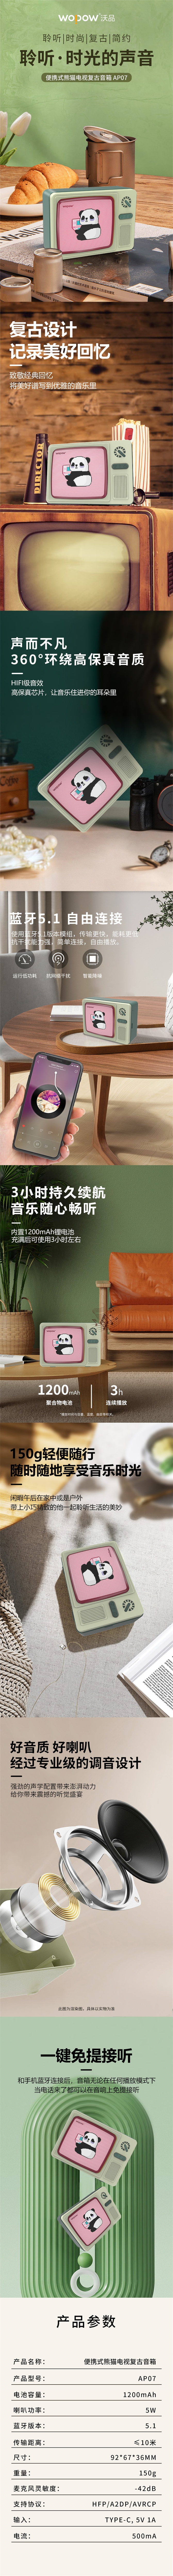 【沃品】熊貓電視復古設計便攜藍芽無線音箱 藍芽喇叭 AP07